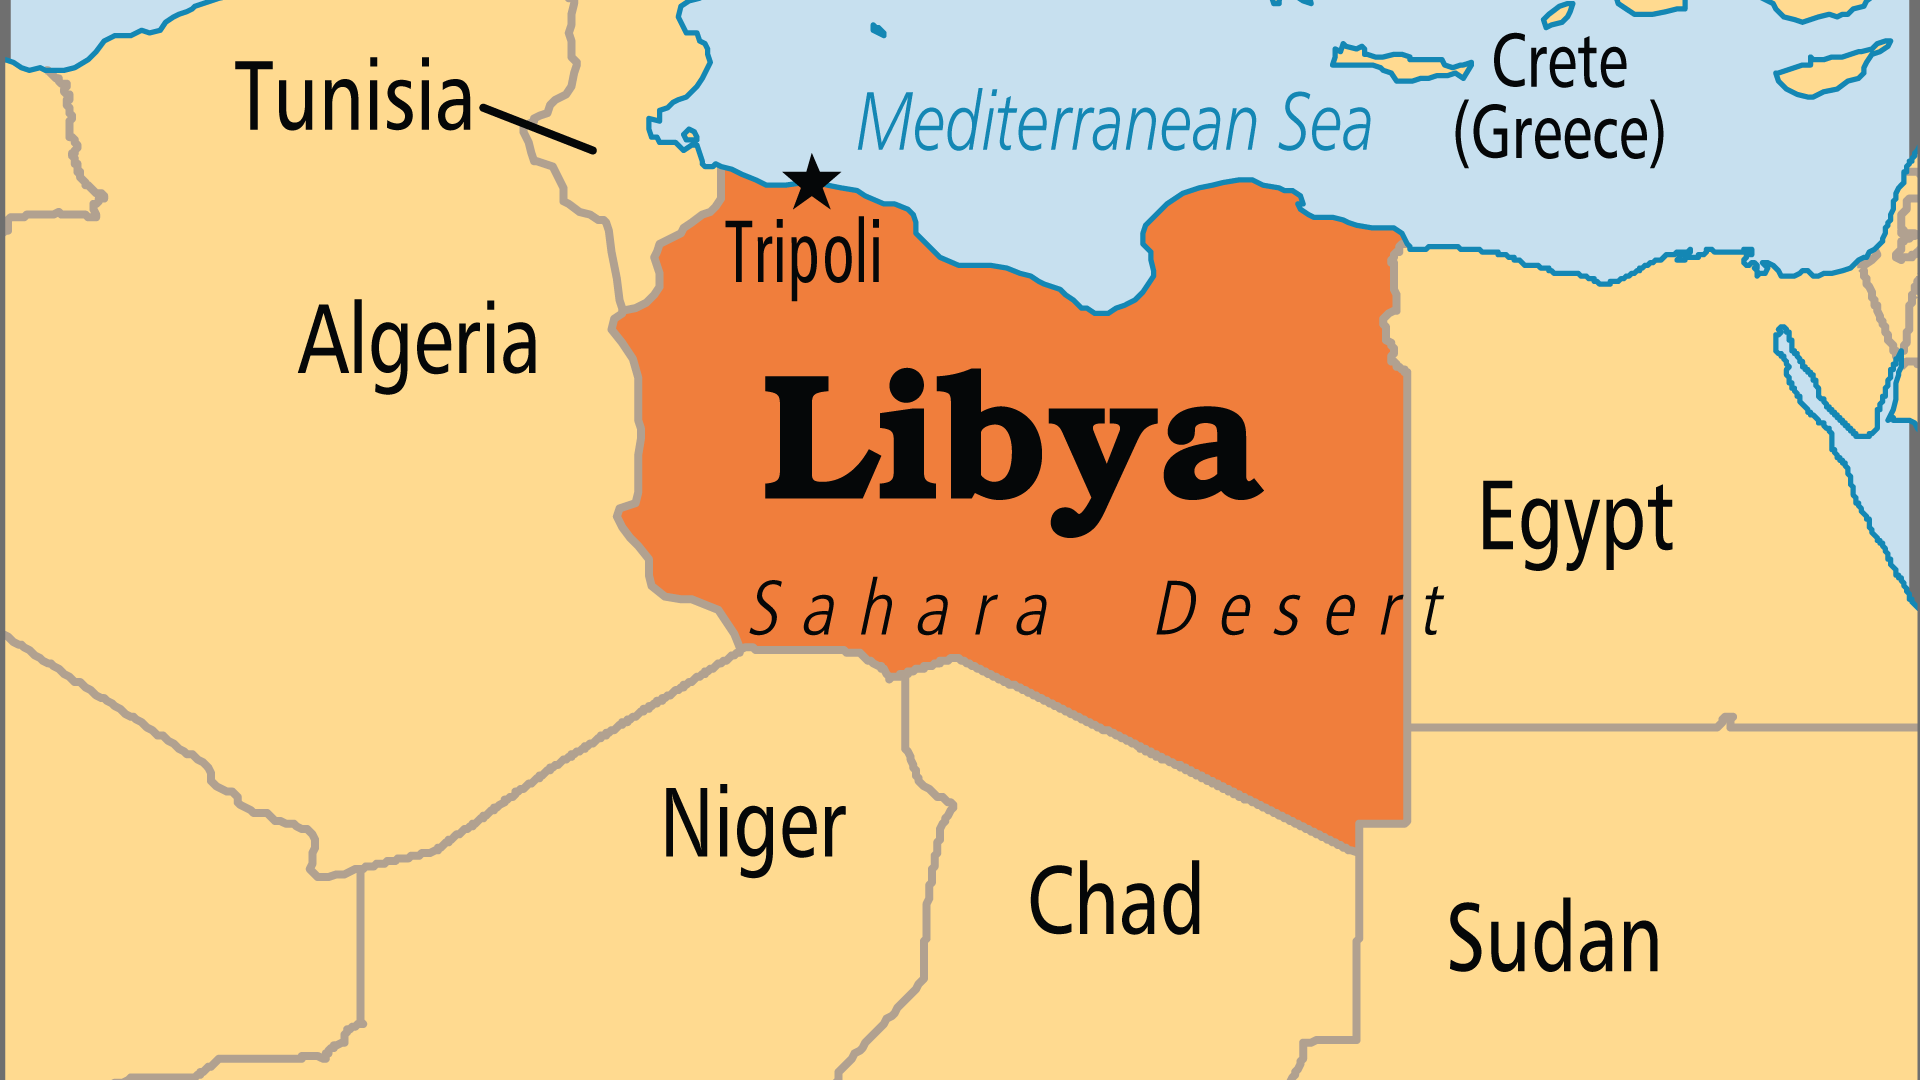 Libya (Operation World)